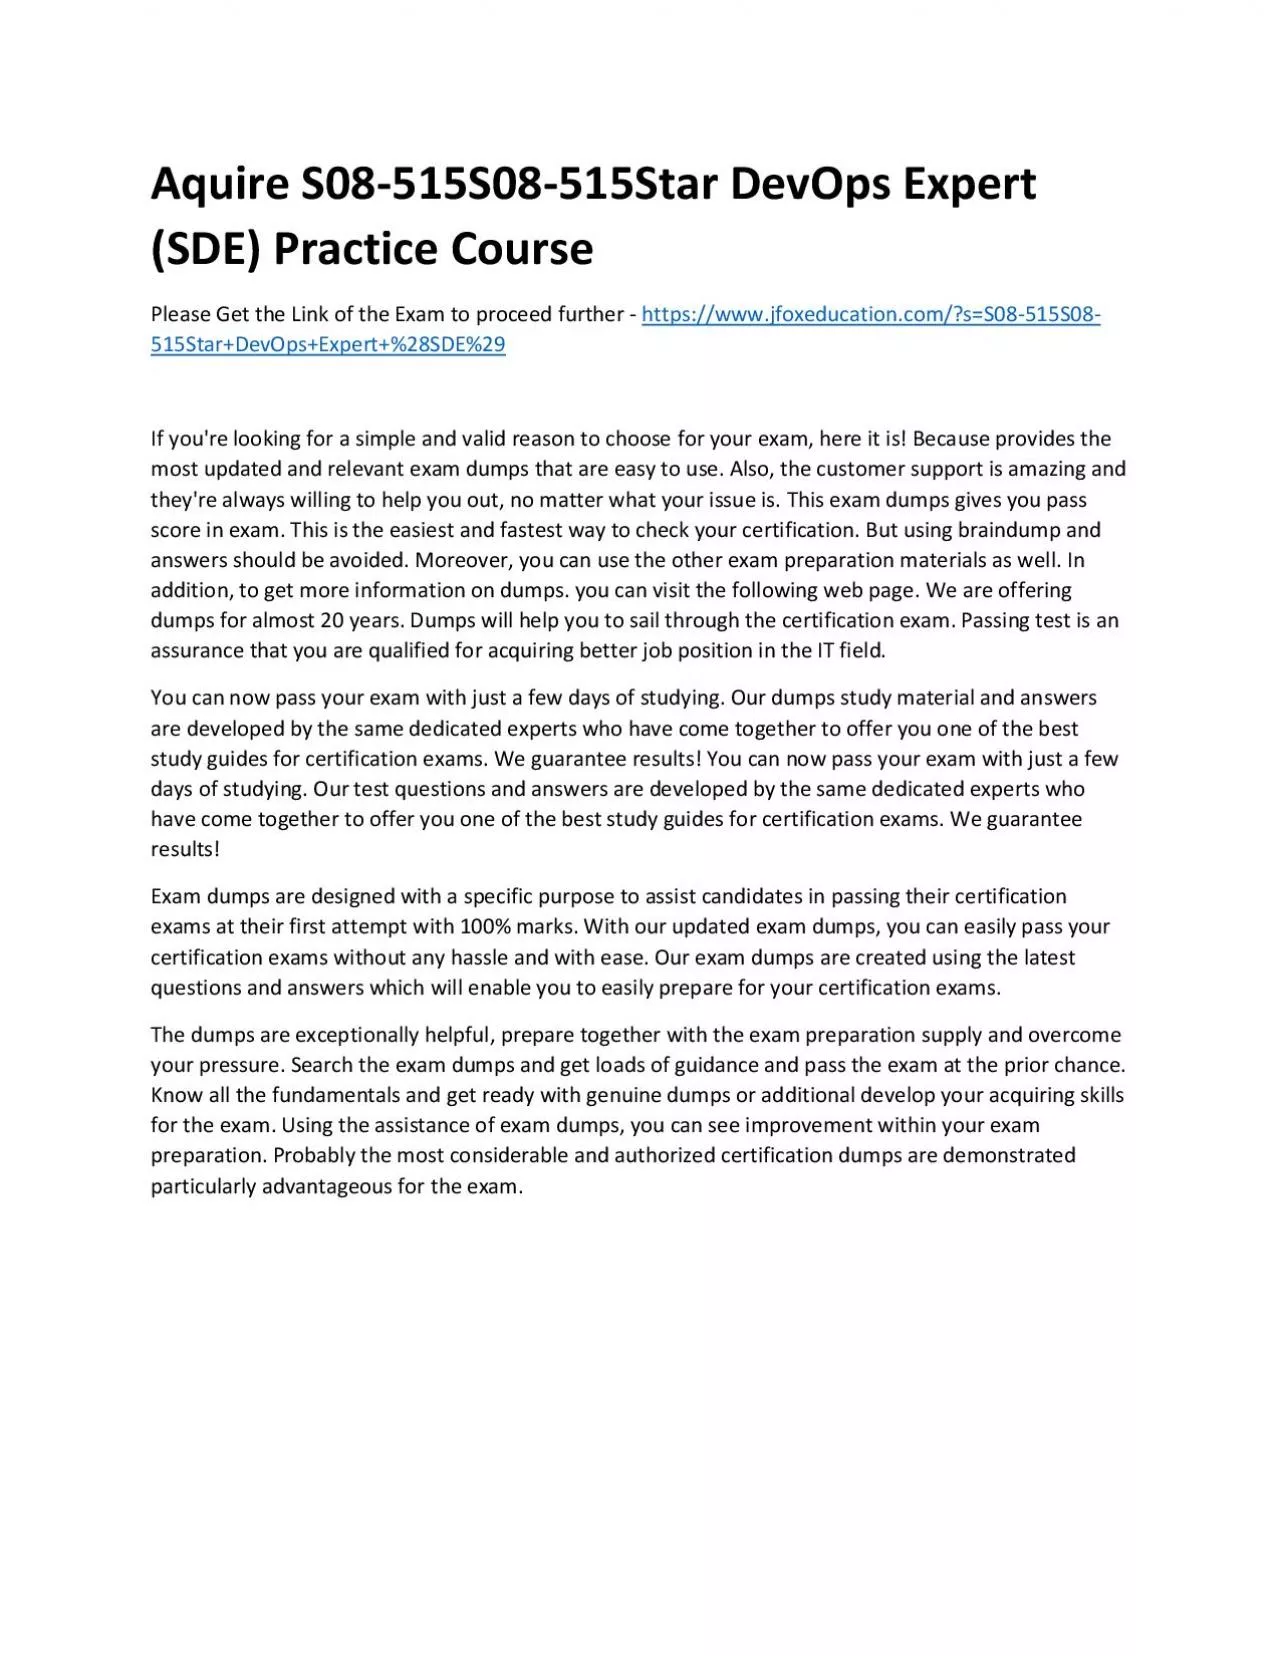 Aquire S08-515S08-515Star DevOps Expert (SDE) Practice Course